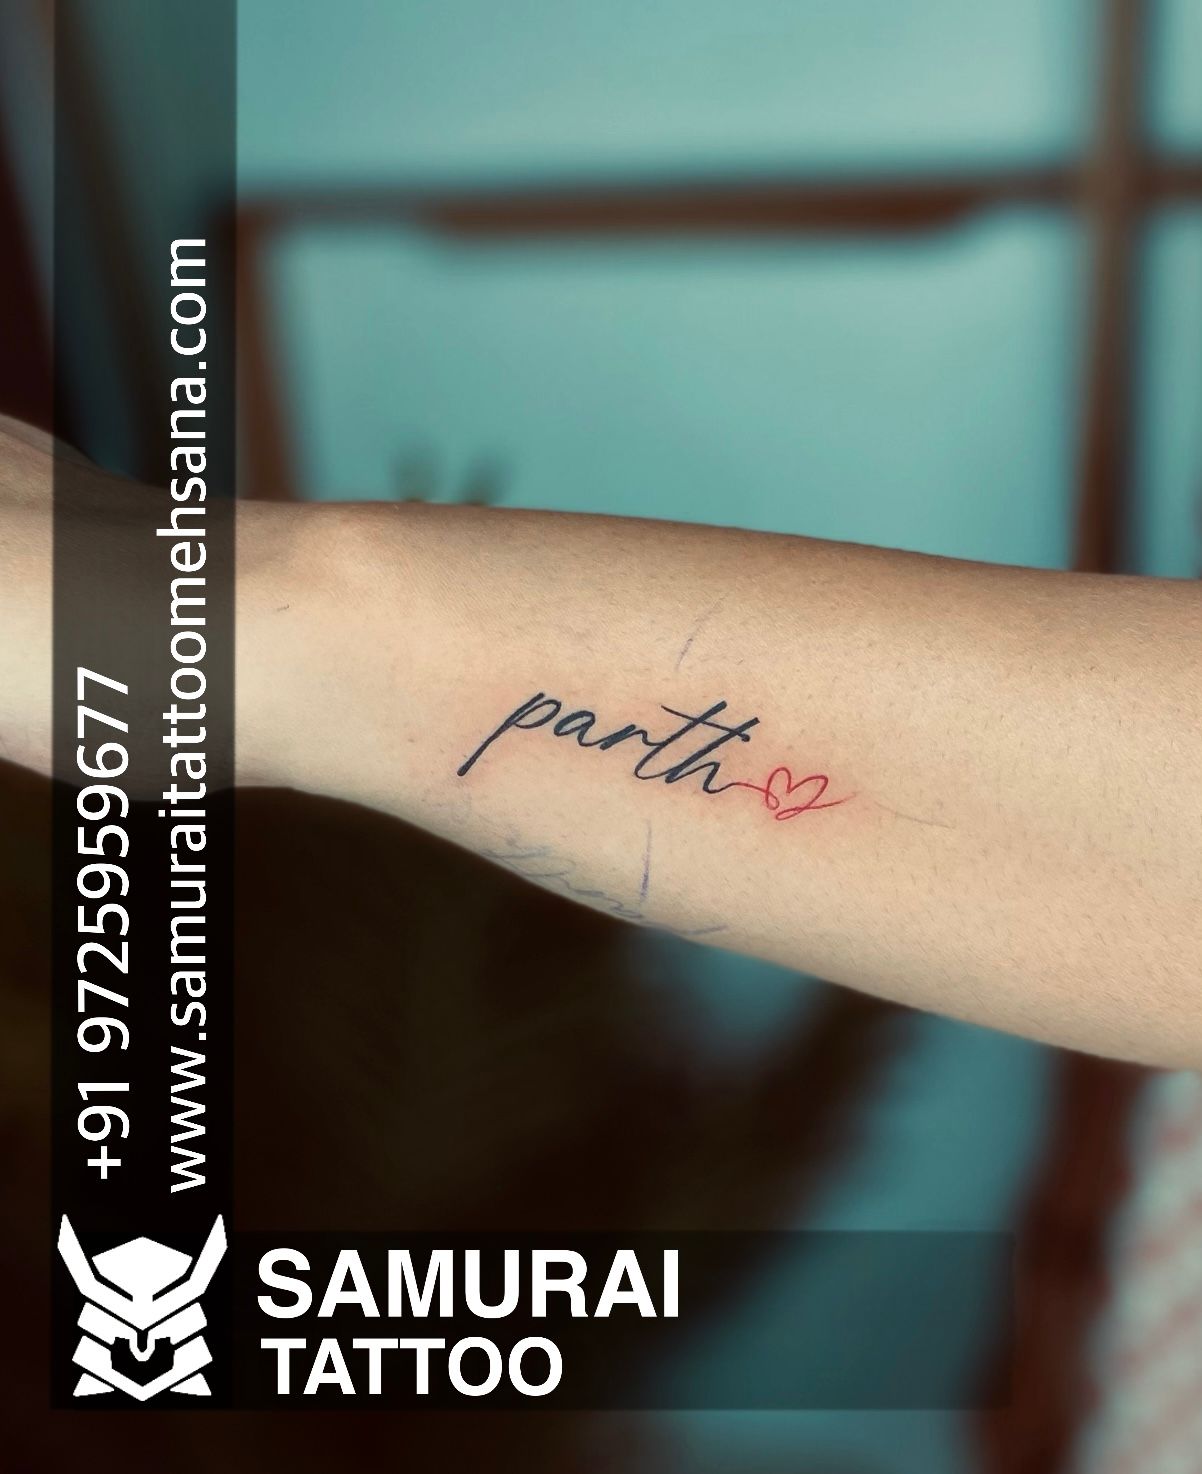 Tattoo uploaded by Parth Sarkar • Tattoodo